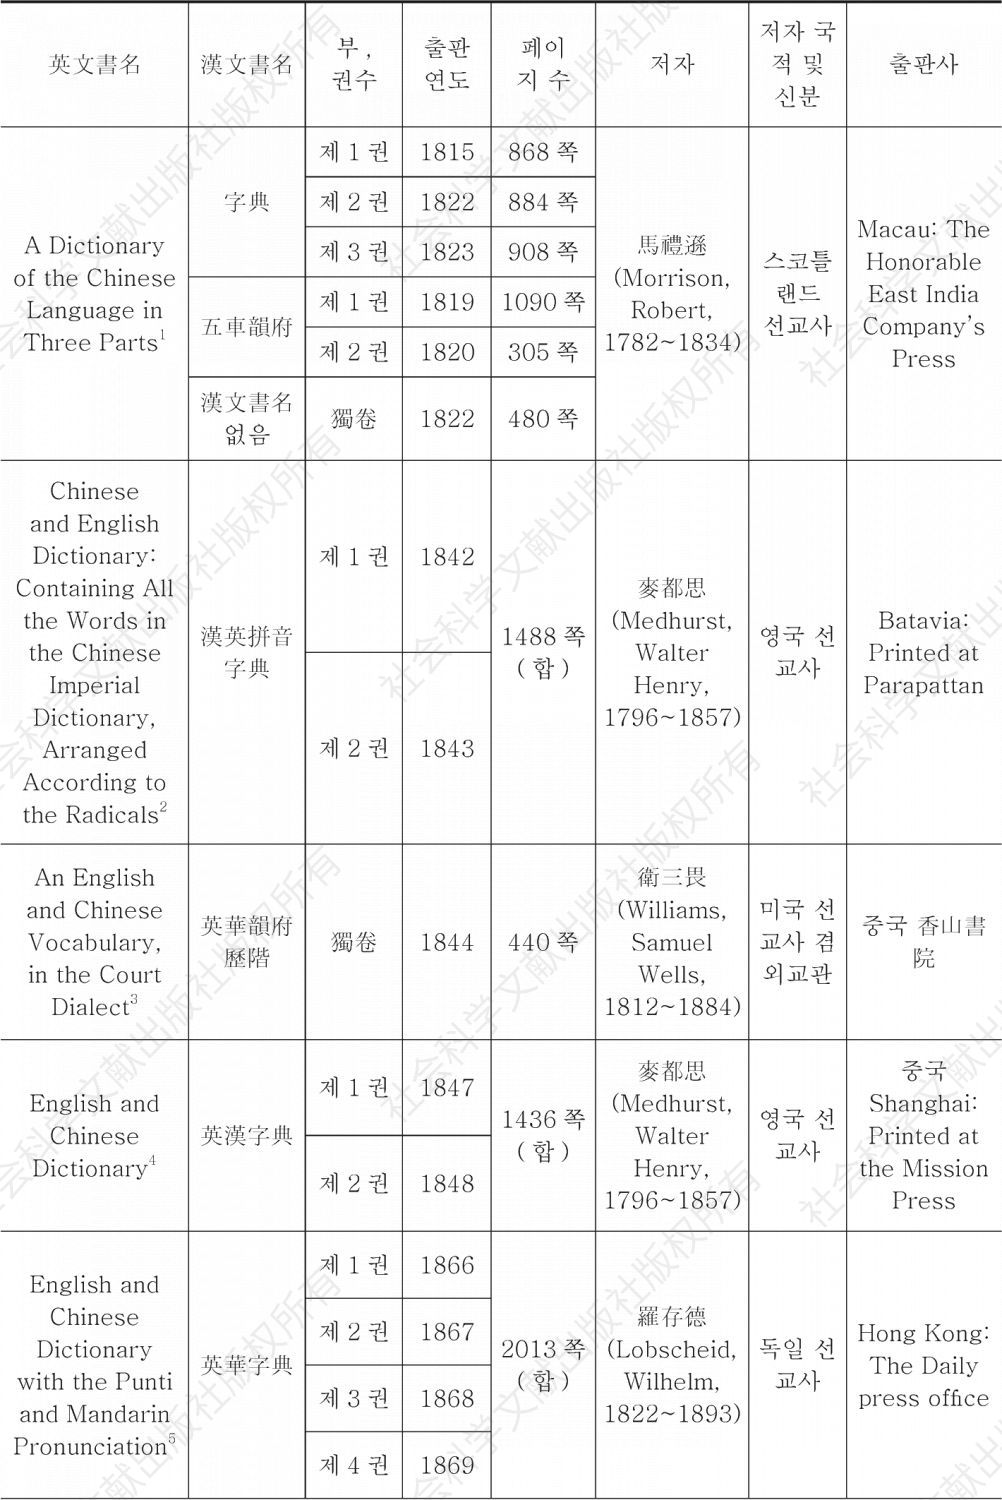 ＜표1＞ 본 연구에 이용된 중국 근대 영한류 이중어사전 서지사항 일람표